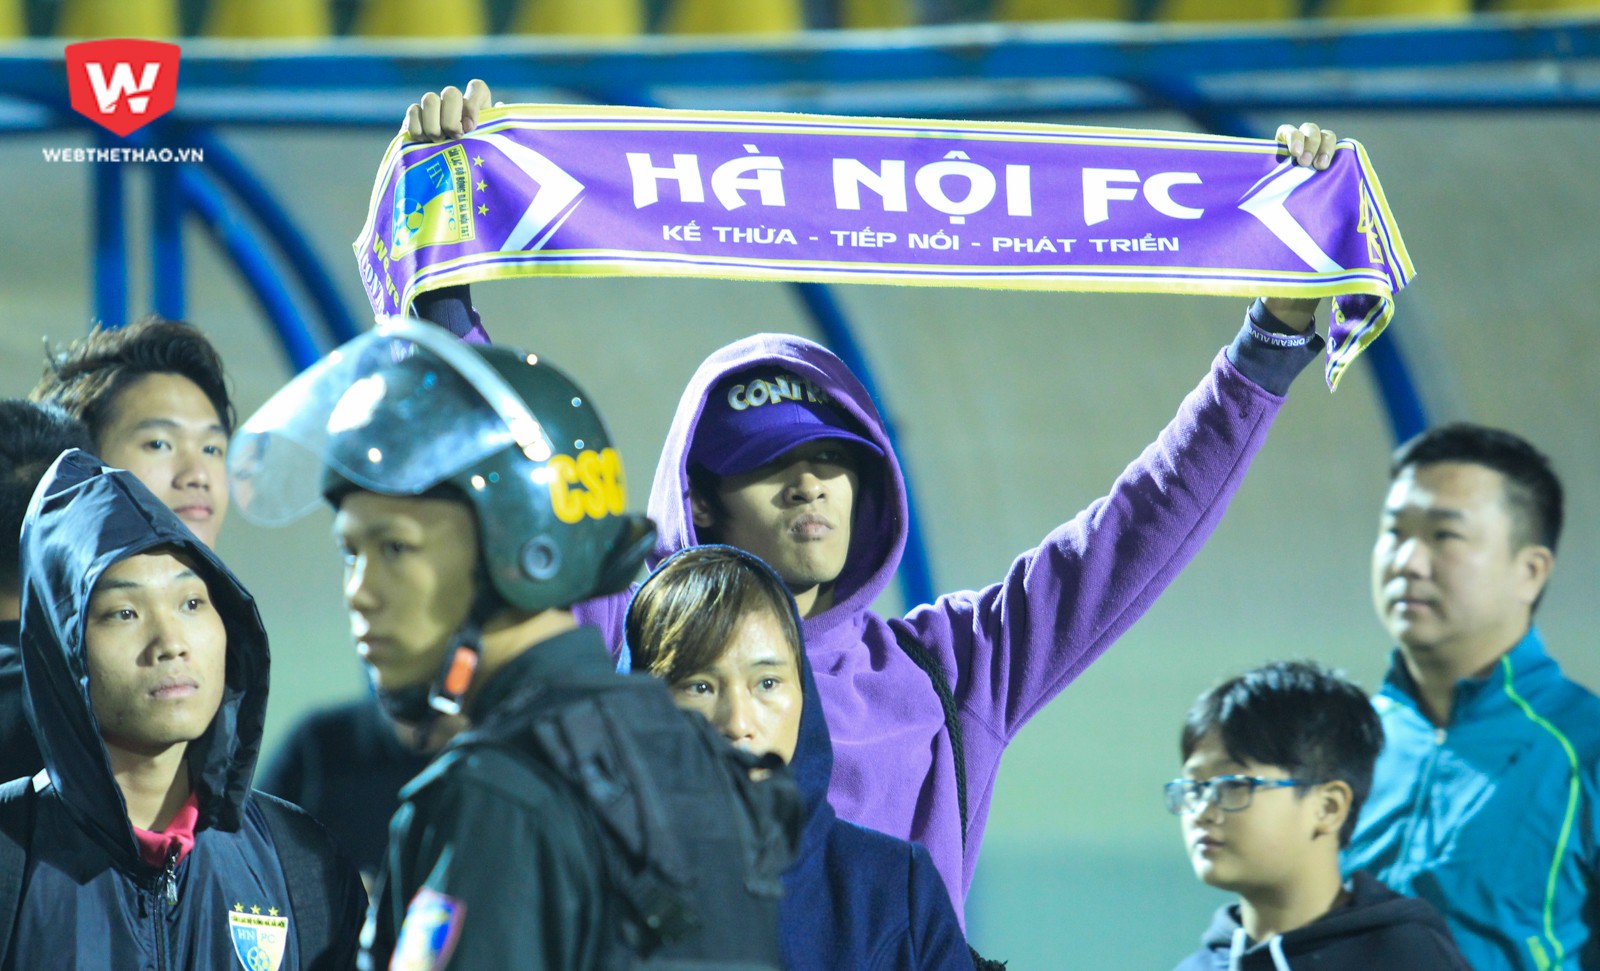 Hà Nội FC chỉ giành được HCĐ tại V.League 2017 sau một trận cầu kịch tính với Than Quảng Ninh. Lúc này, mọi thứ liên quan đến Hà Nội FC đều nhuốm một màu buồn. Ảnh: Trung Thu.